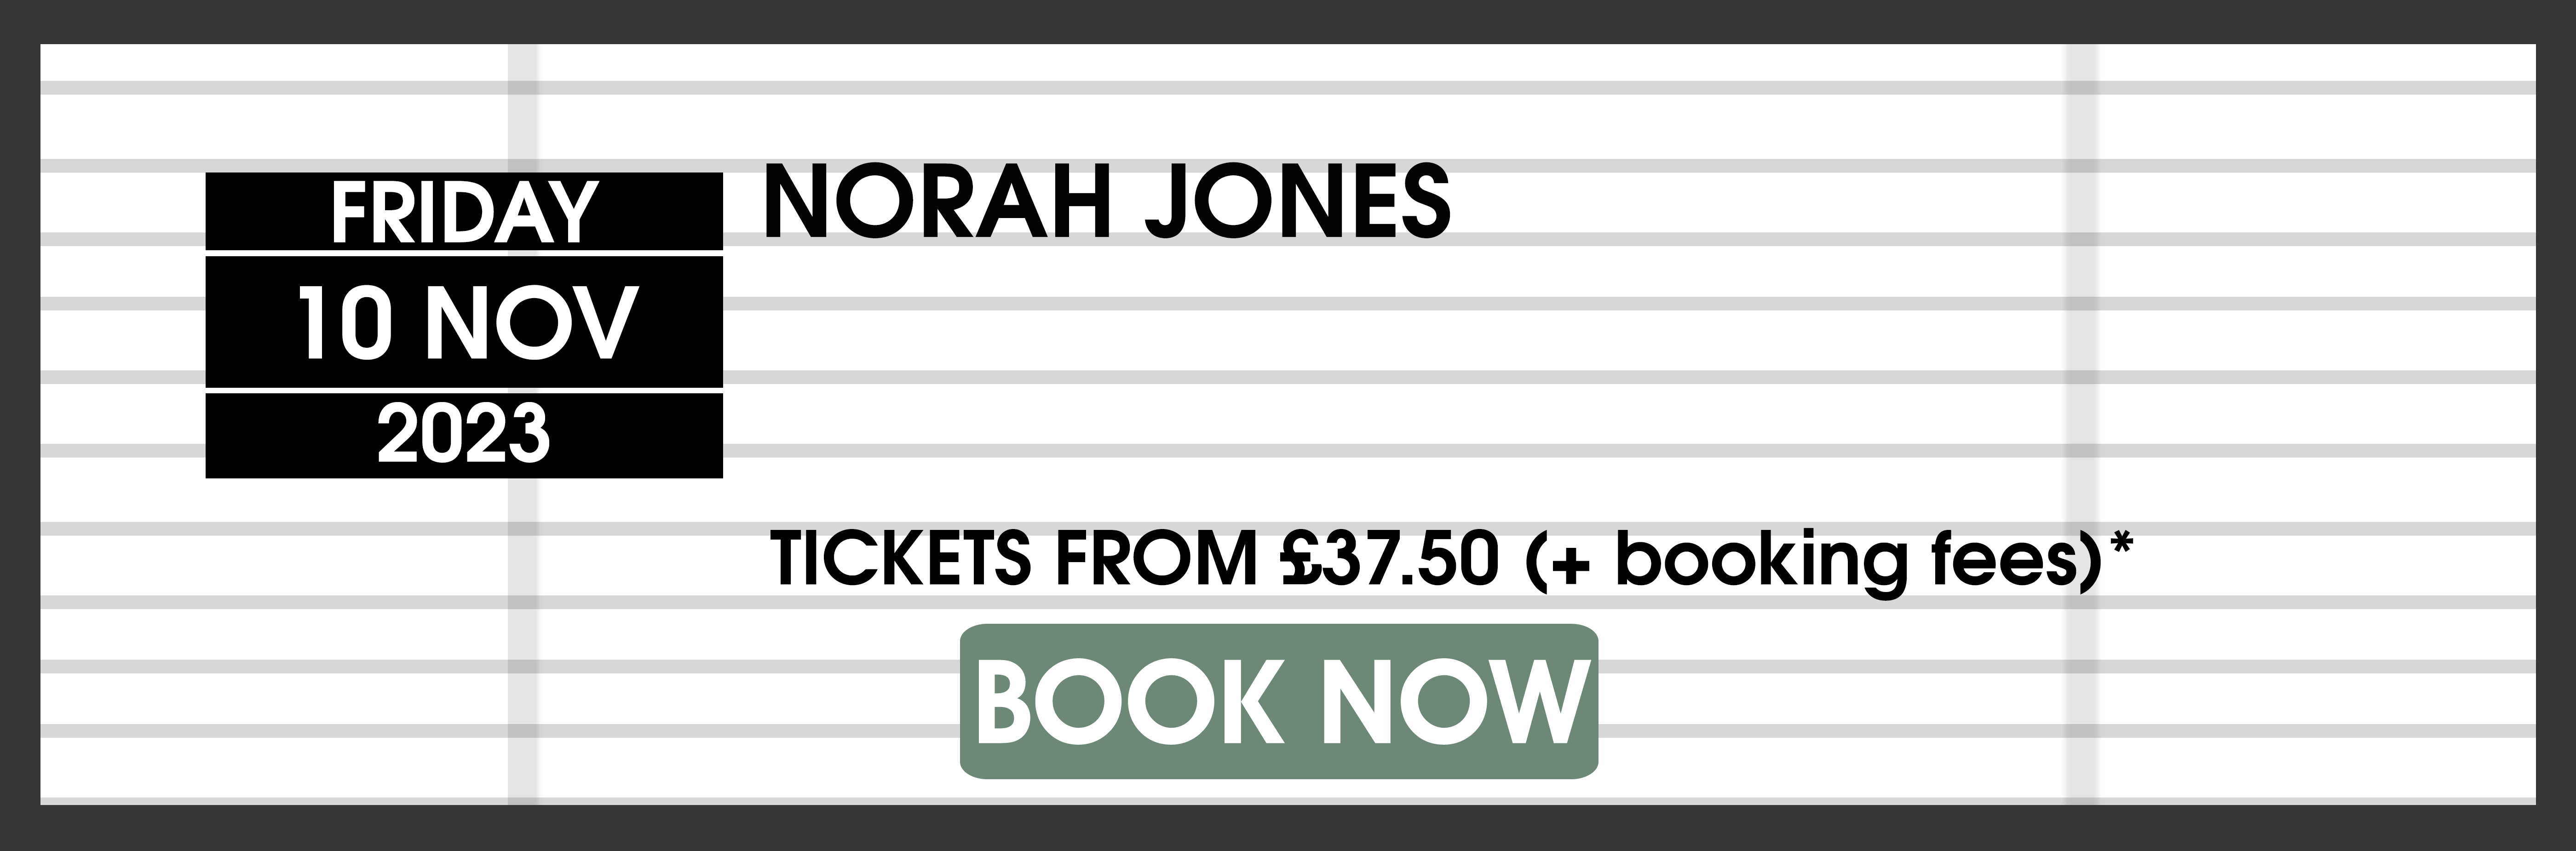 23.11.10 Norah Jones BOOK NOW